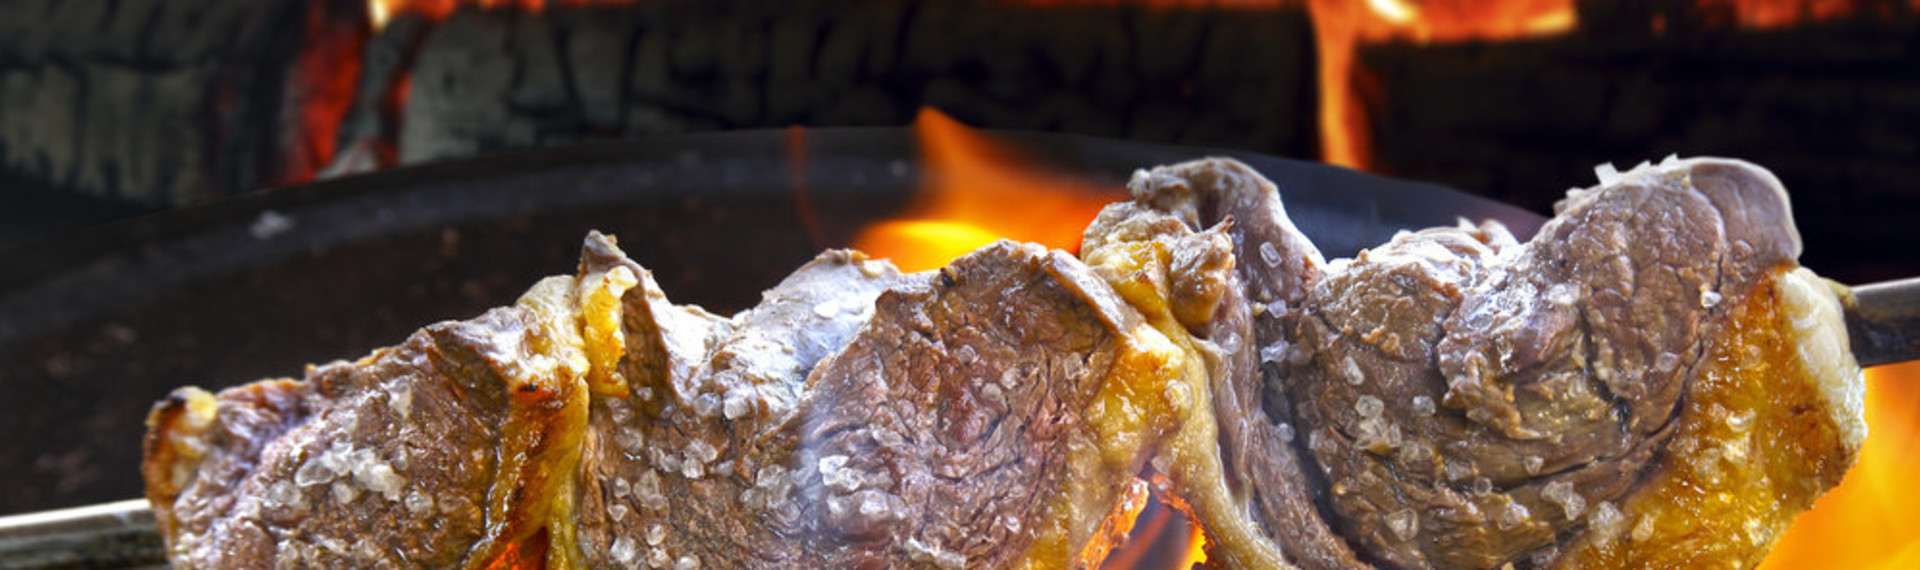 Buffet à volonté - restaurant grill brésilien | Réservez sur EVG.fr